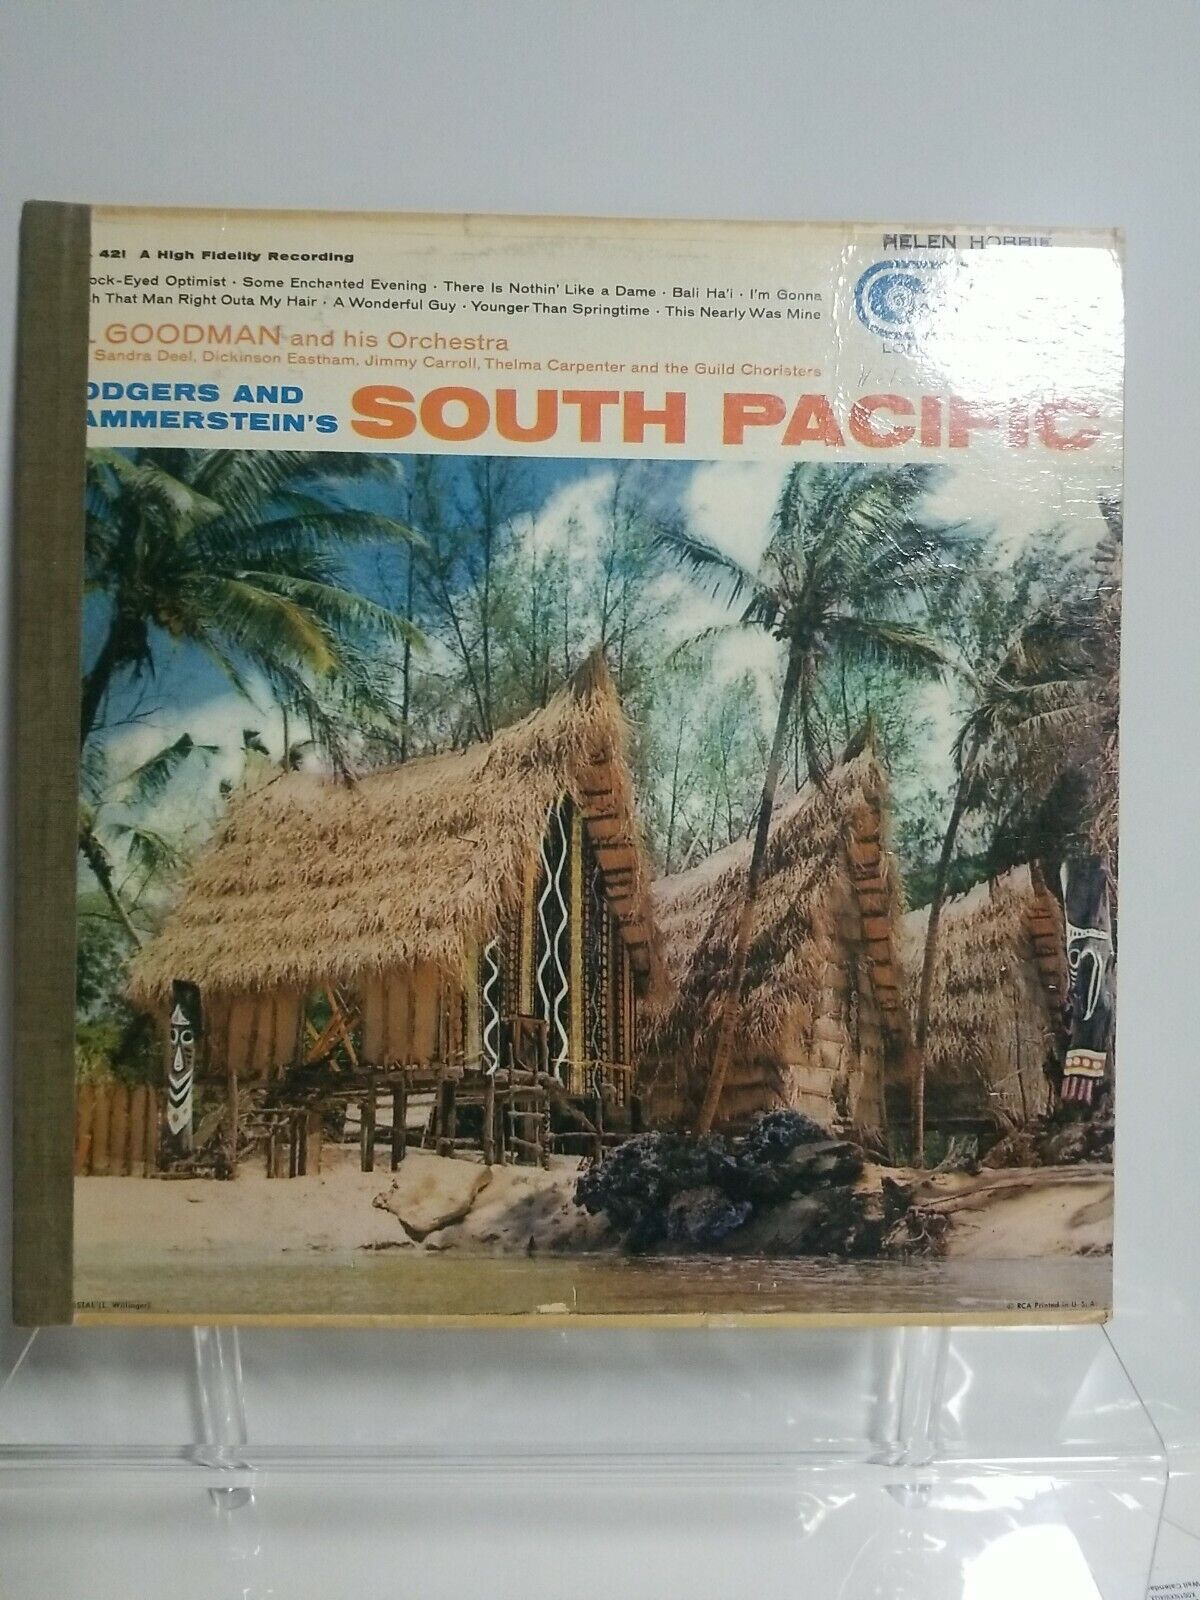 VTG South Pacific LP Record Rare Tiki Hut Cover 1958 Al Goodman Decor Music RCA